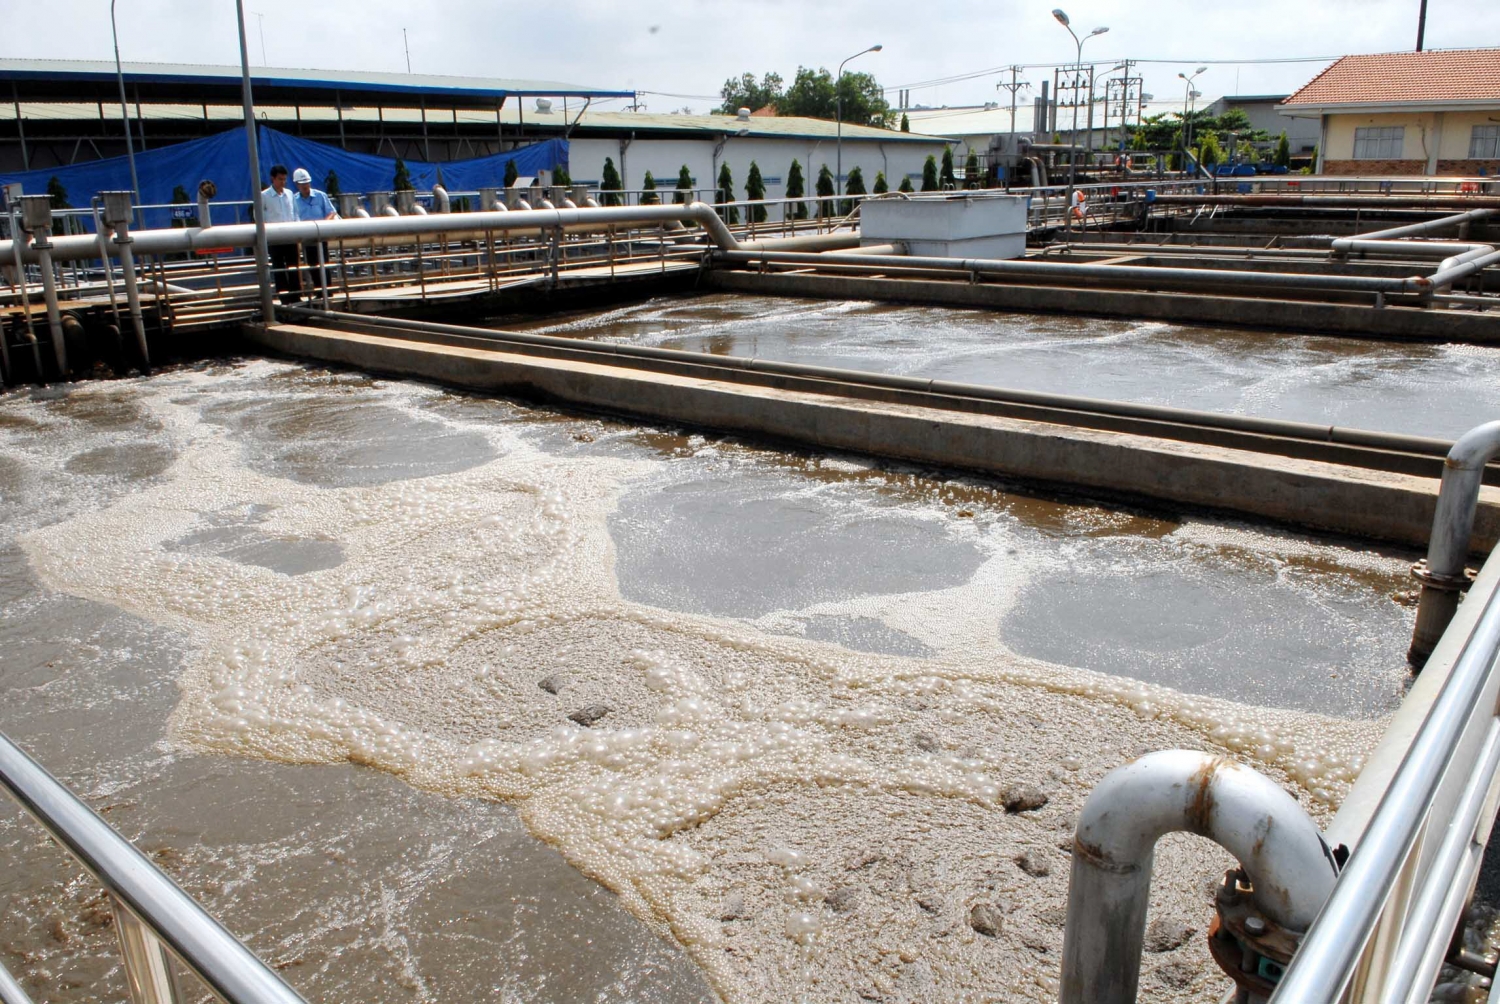 Các khu công nghiệp phải xây dựng, vận hành hệ thống xử lý nước thải tập trung